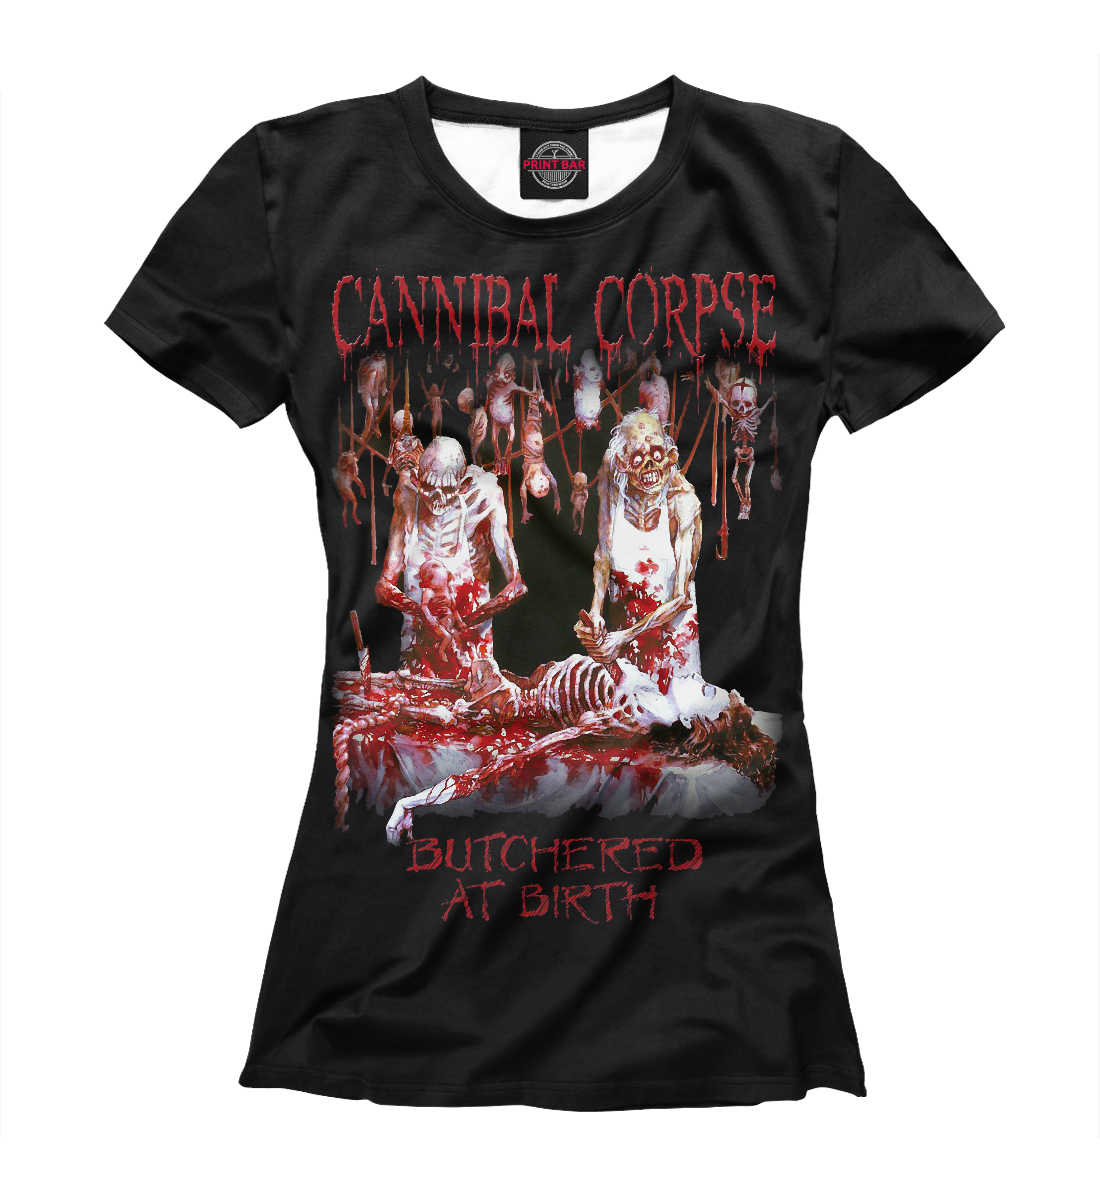 Cannibal corpse перевод